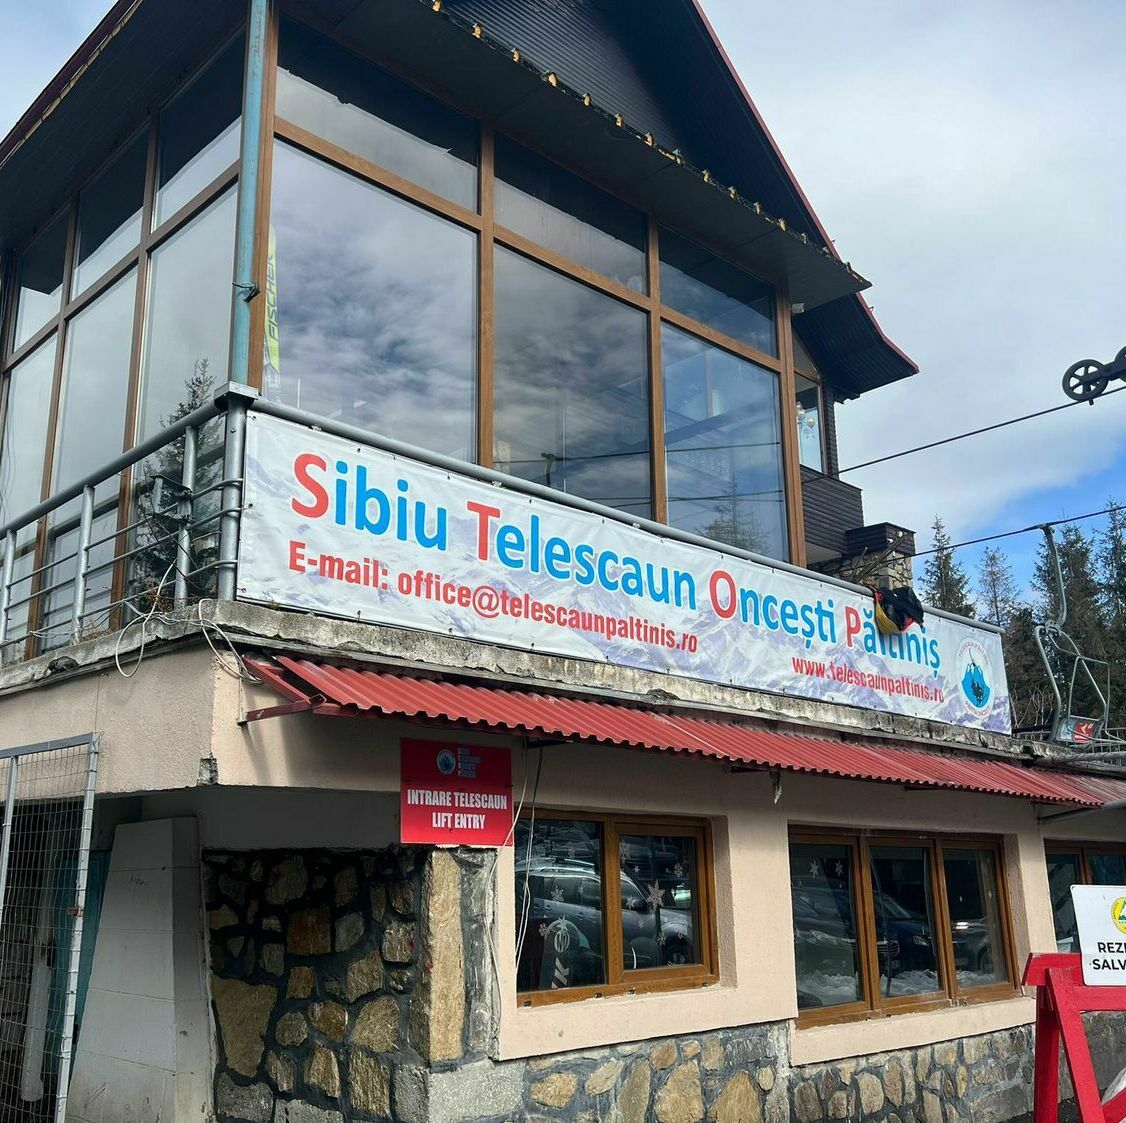 Servicii complete de producție publicitară și semnalistică pentru stațiunea Păltiniș, inclusiv bannere publicitare și panouri de orientare, pentru o promovare eficientă a atracțiilor turistice locale.